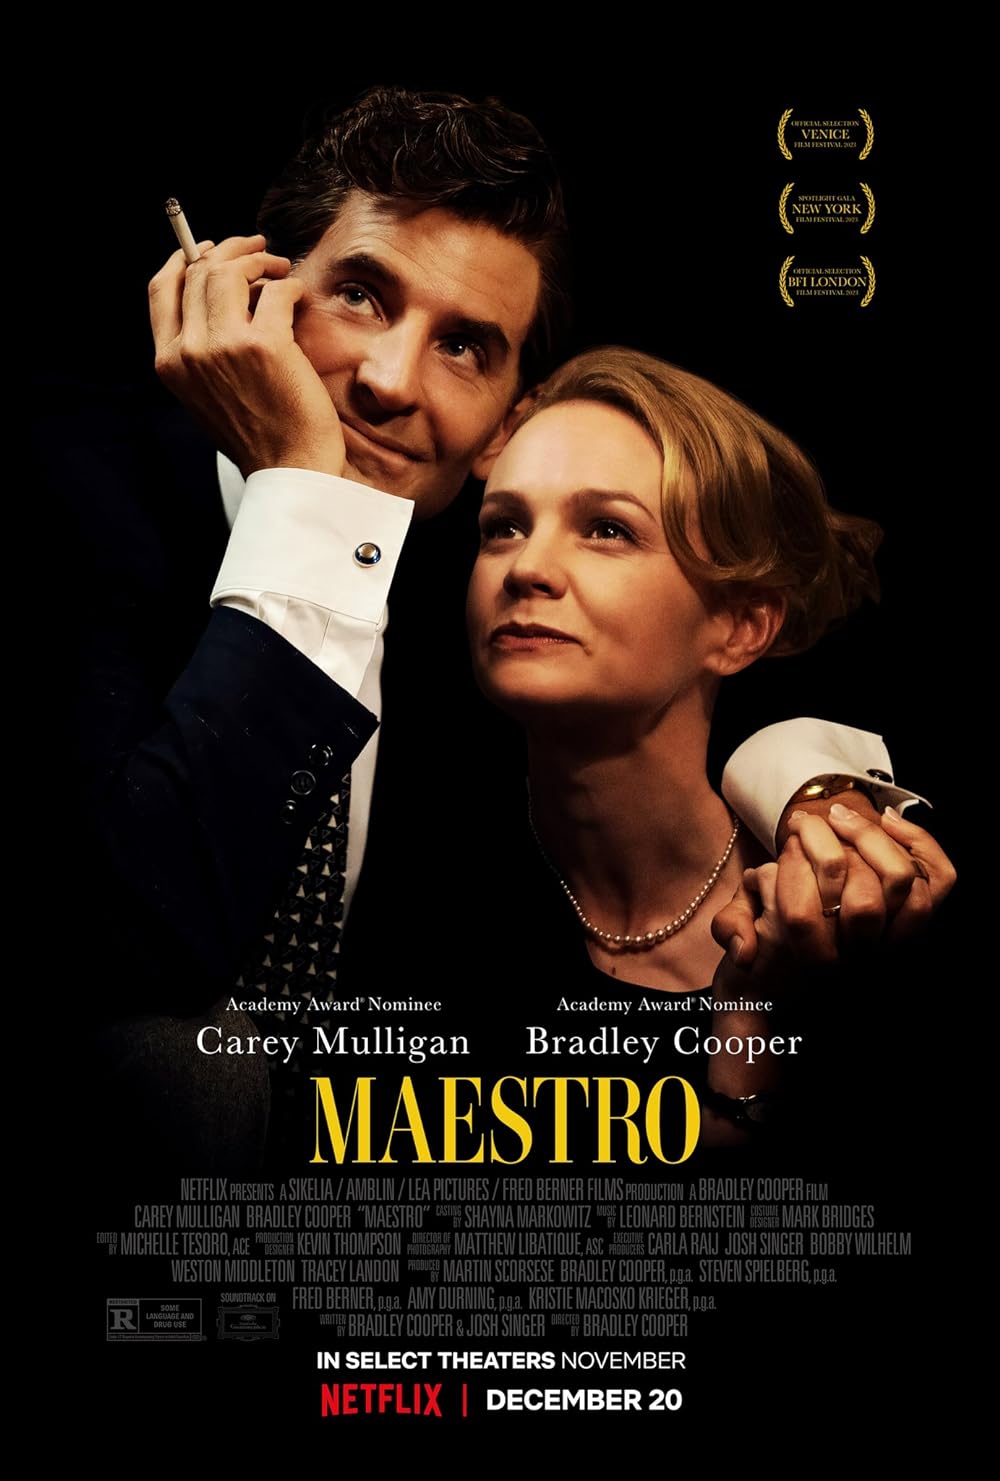 Carey Mulligan in “Maestro”